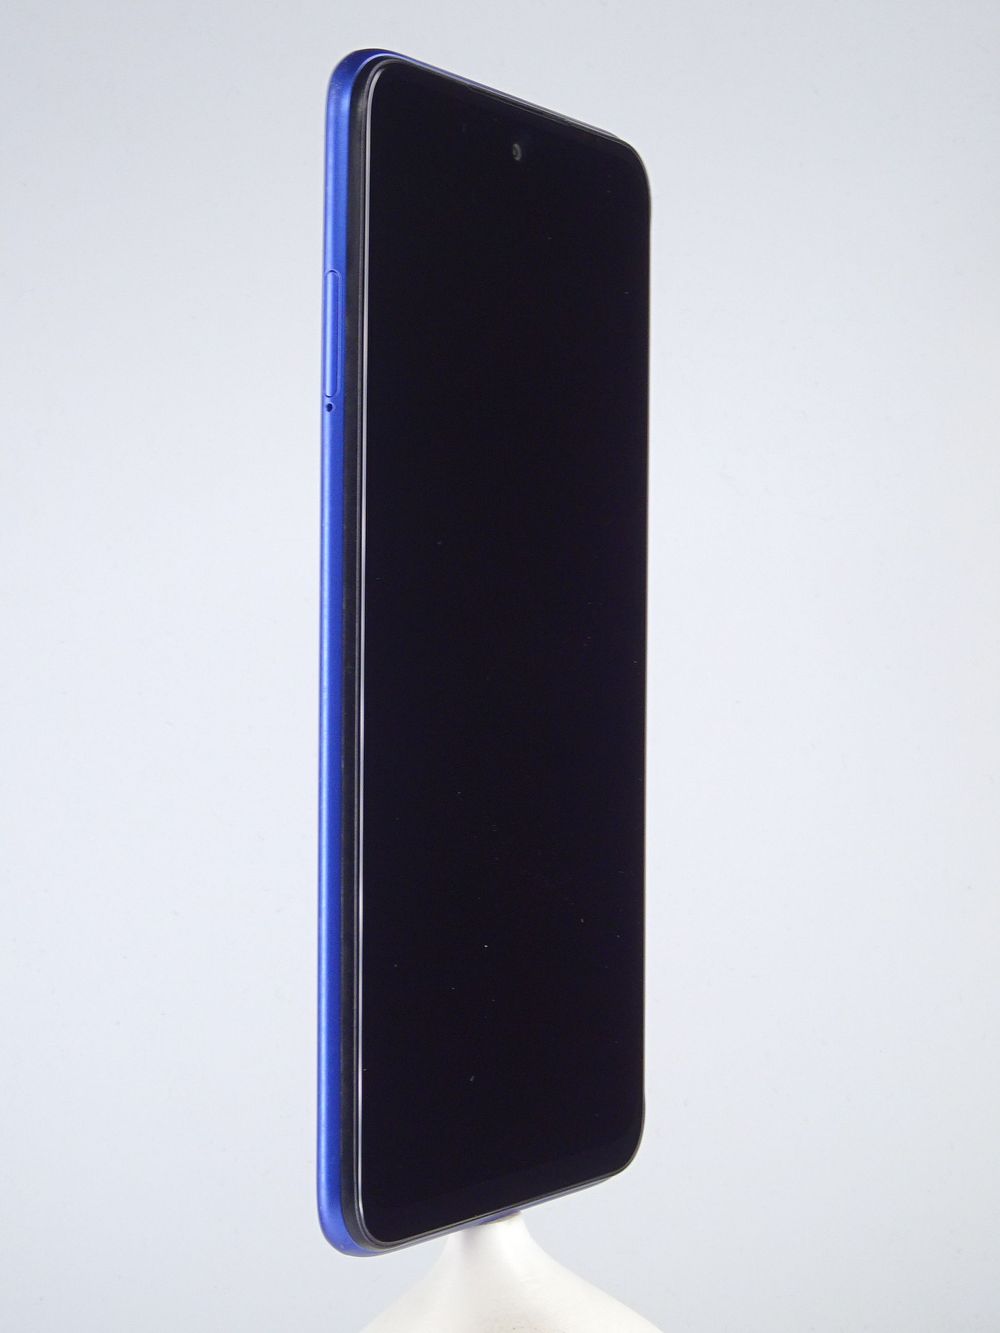 Мобилен телефон Xiaomi Redmi Note 10 5G, Nighttime Blue, 64 GB, Foarte Bun